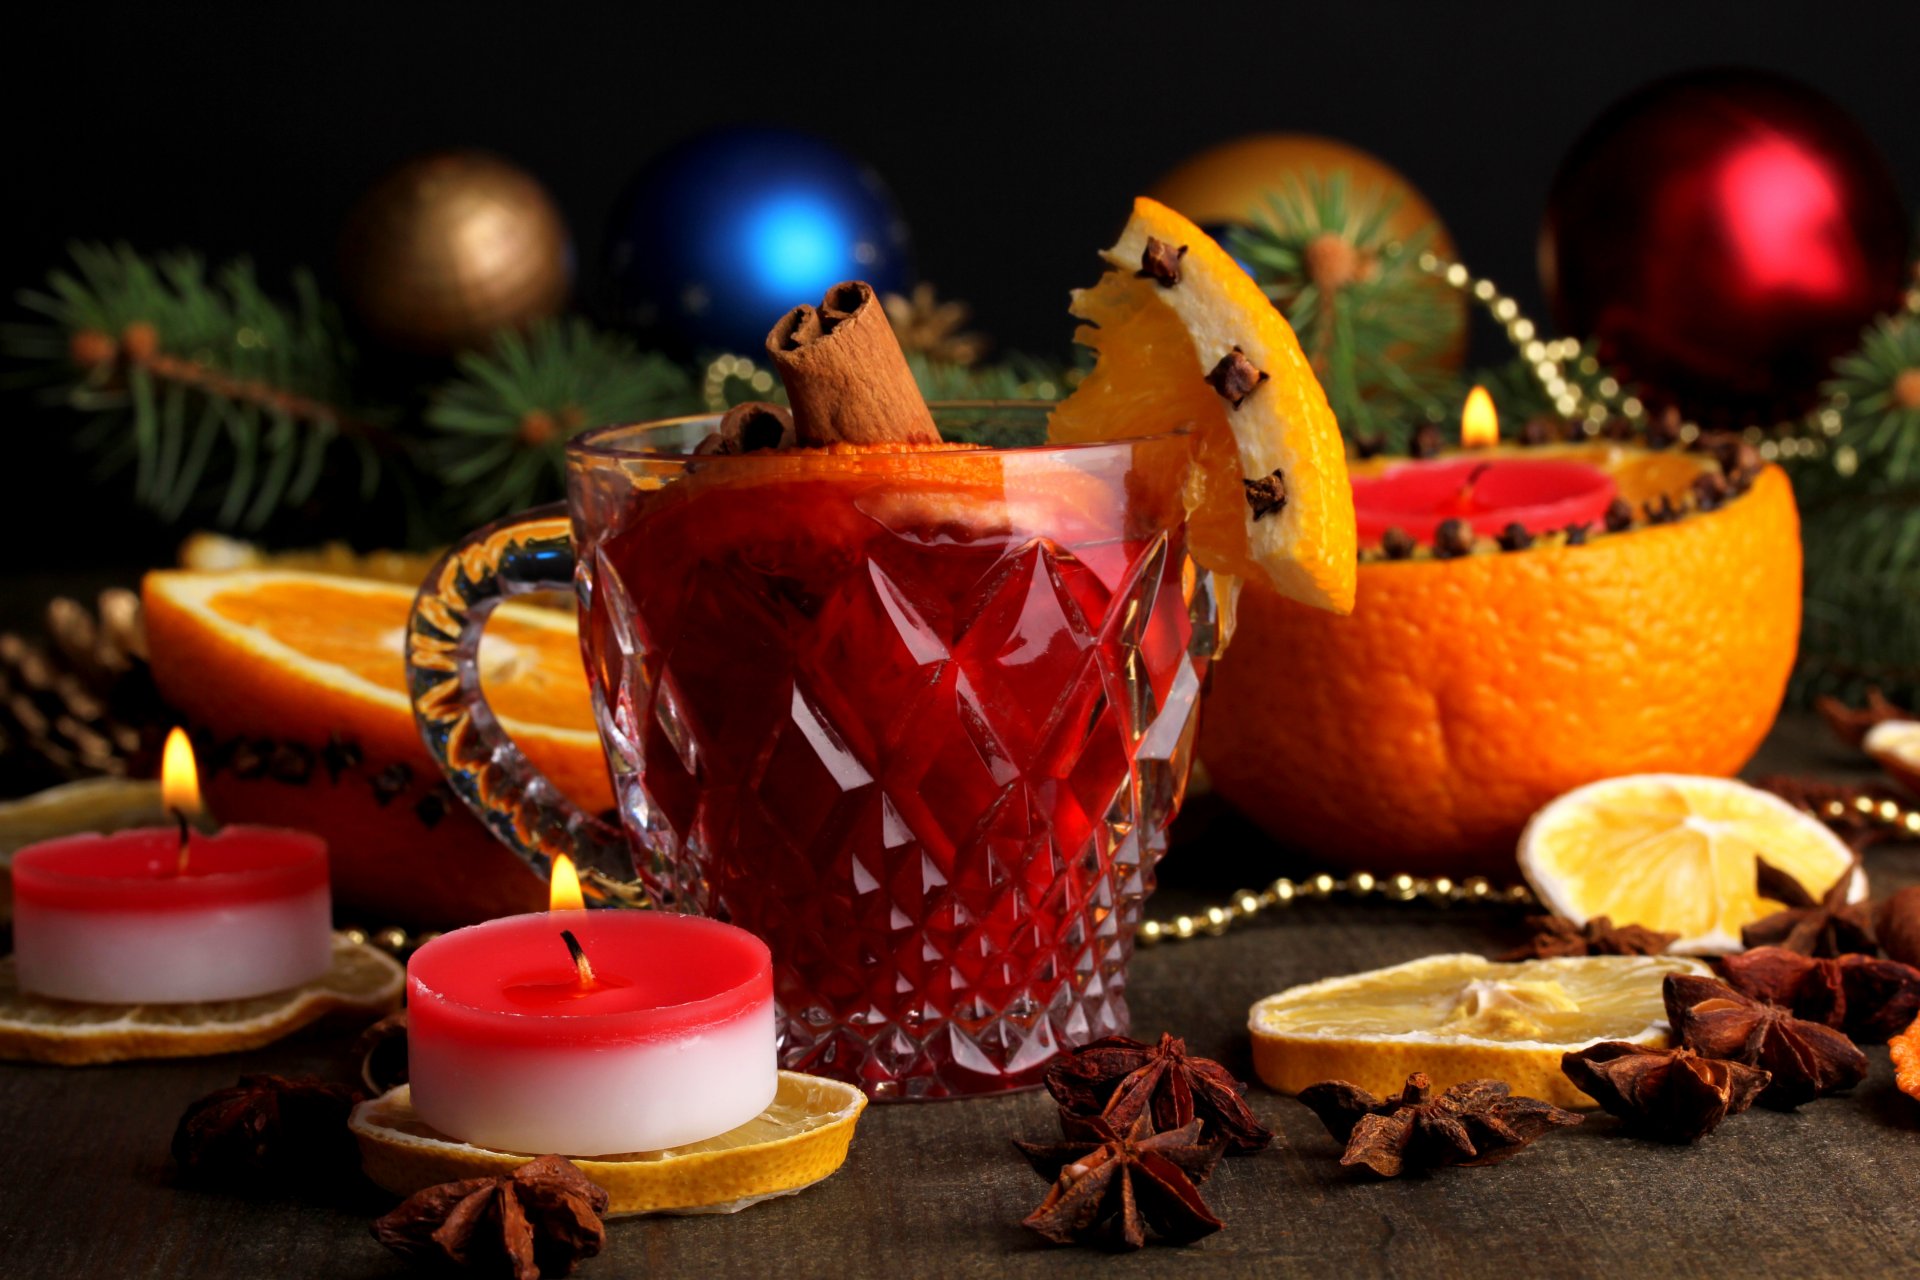 глинтвейн чашка анис бадьян апельсин лимон корица напиток зима свечи игрушки елочные ветки праздники новый год рождество